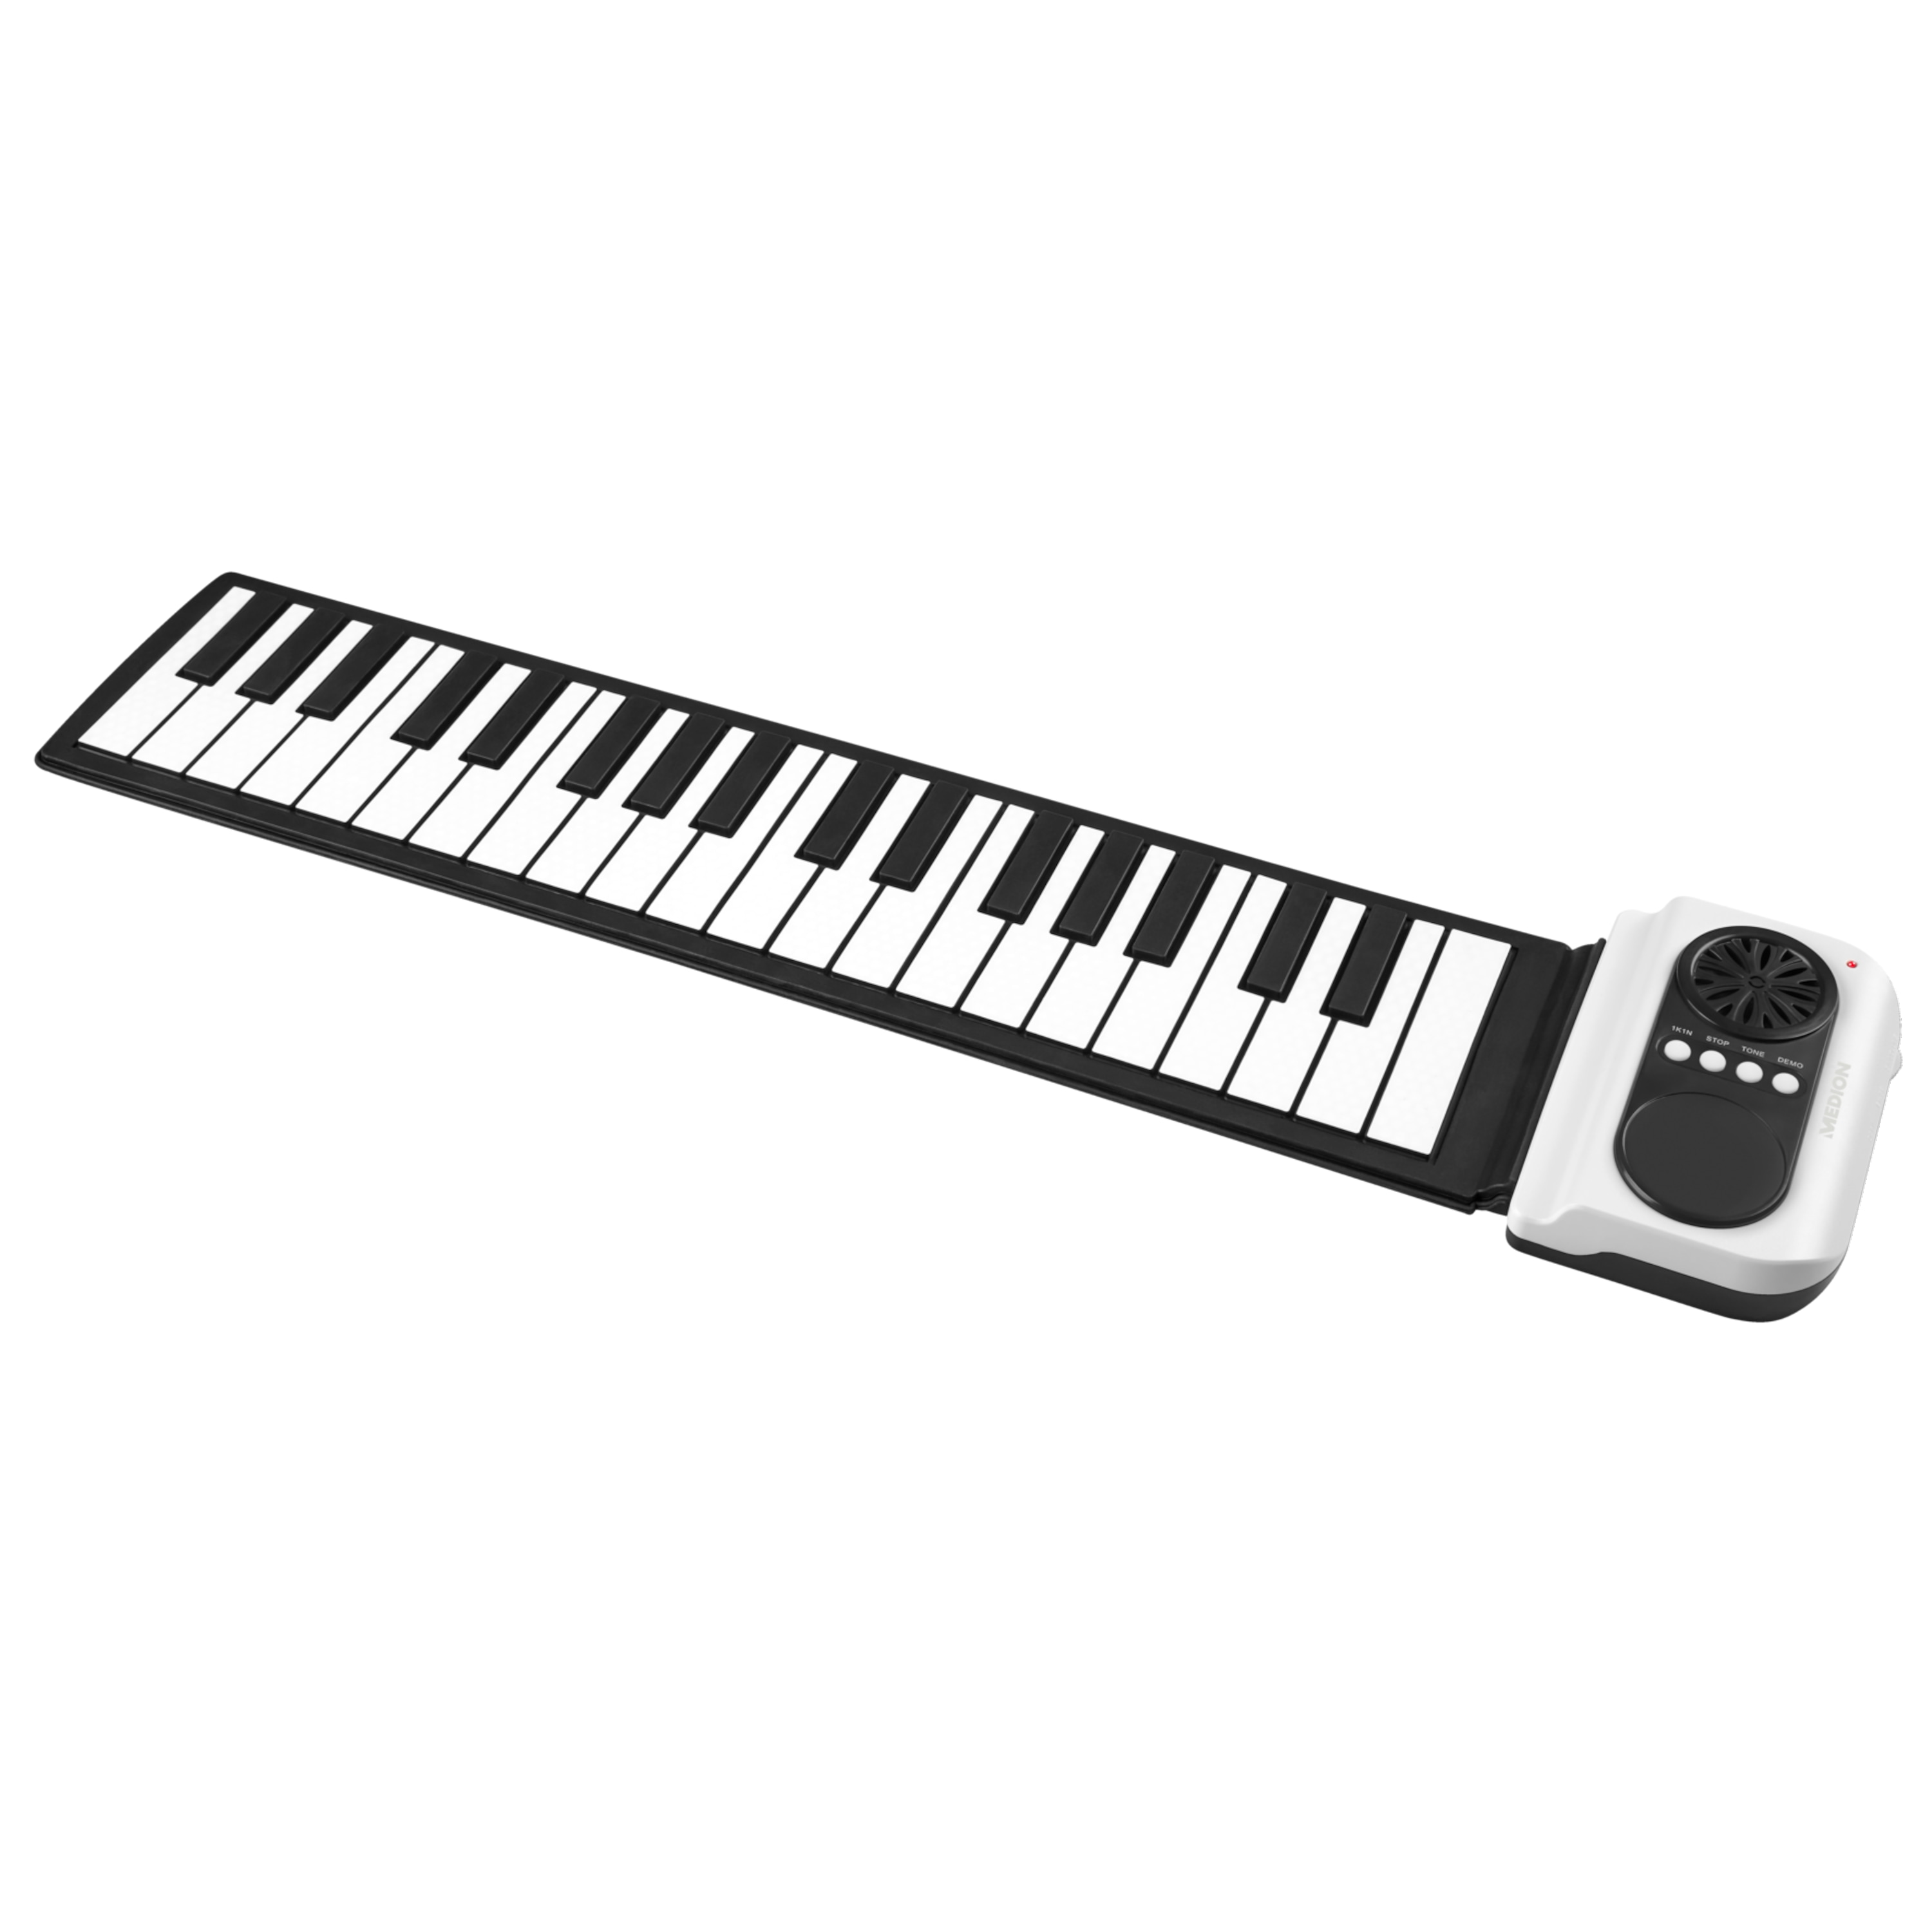 MEDION® S84140 Elektronisches Roll-up Piano, 37 Silikon-Tasten, integrierter Lautsprecher, Kopfhörerausgang, idealer Begleiter für Musik unterwegs